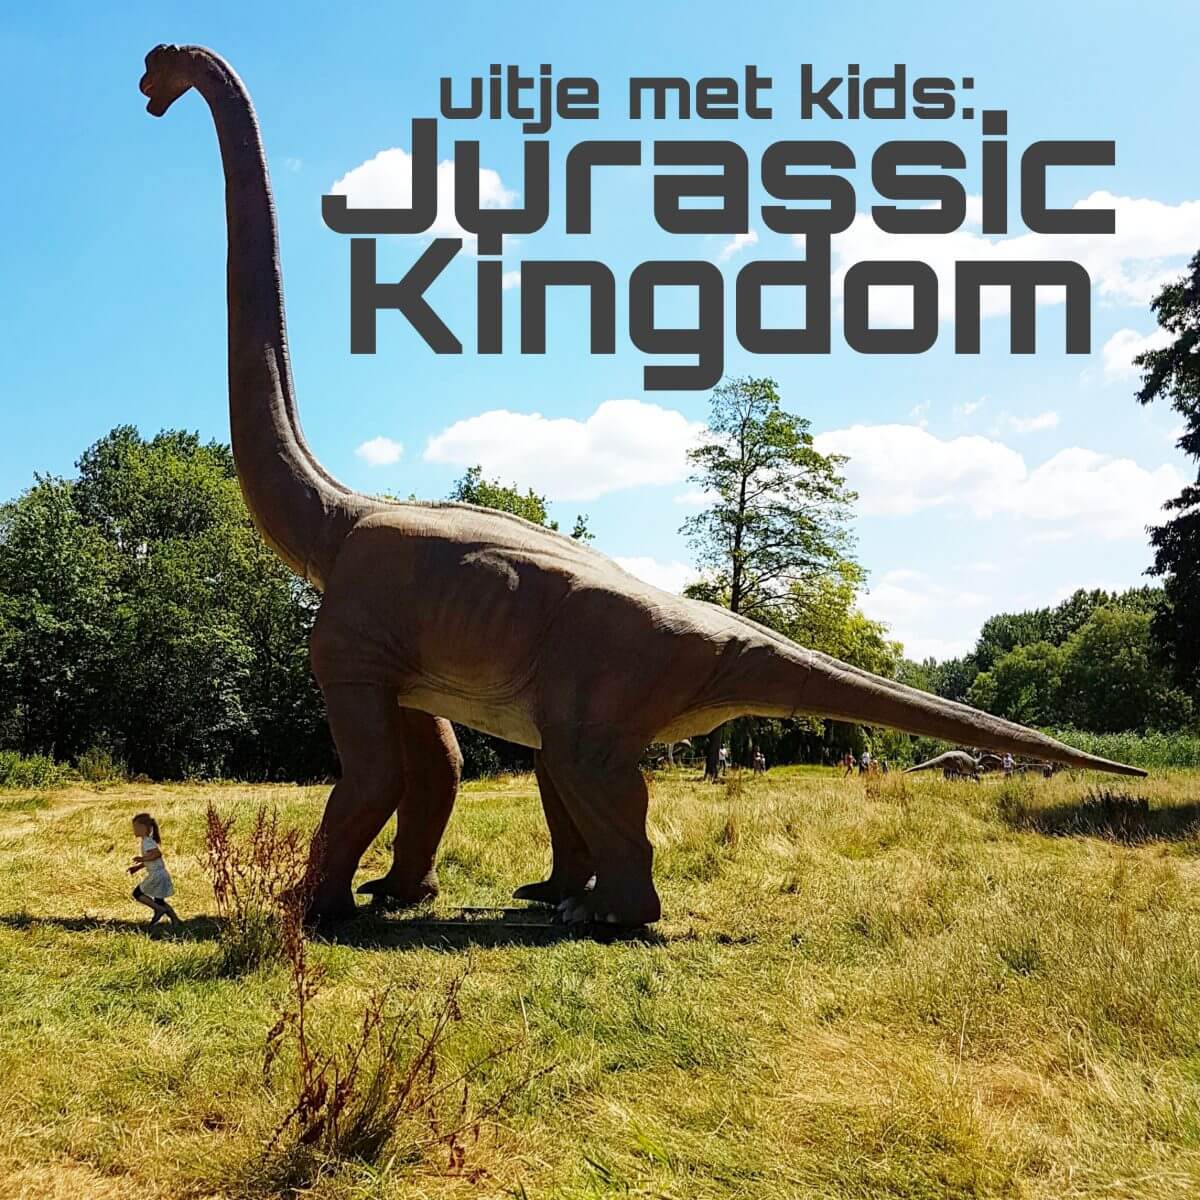 Uitje met kids: dino's bij Jurassic Kingdom en daarna de speeltuin Leuk met kids